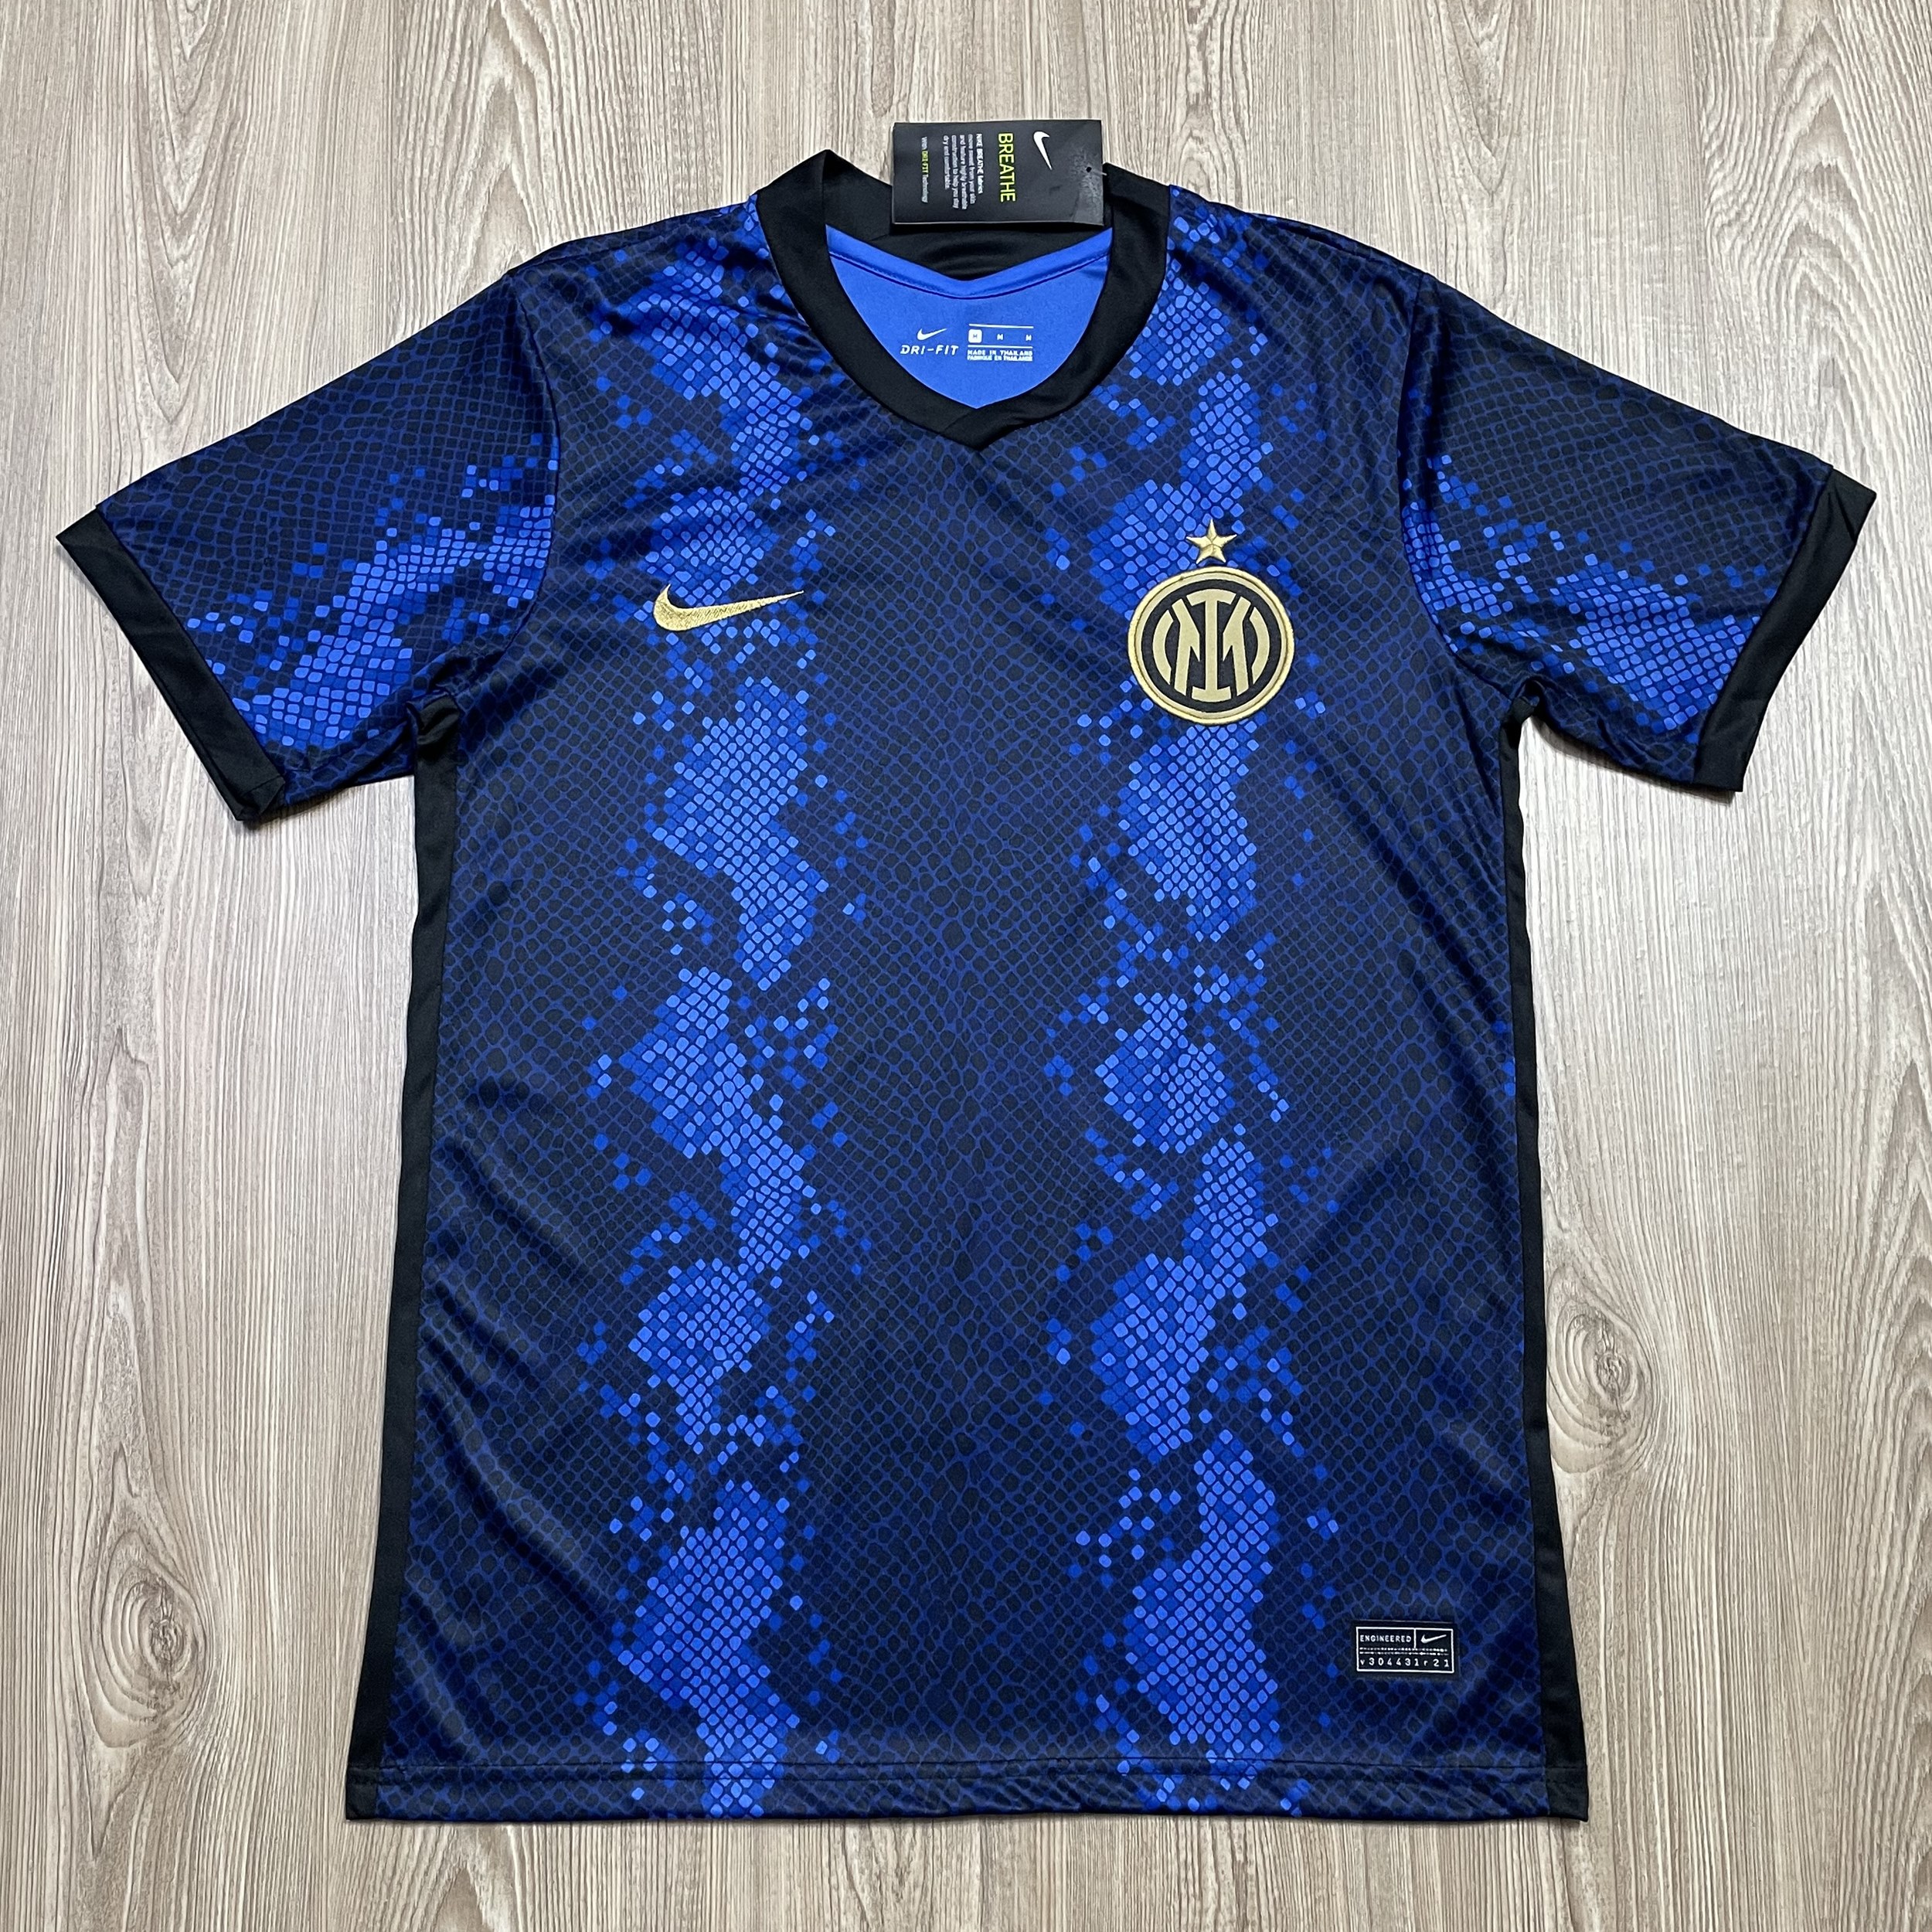 เสื้อสโมสรฟุตบอล ทีม Inter Milan เสื้อบอล เสื้อกีฬา ผ้ายืด ใส่สบาย รับประกันคุณภาพ ผ้าเกรดA